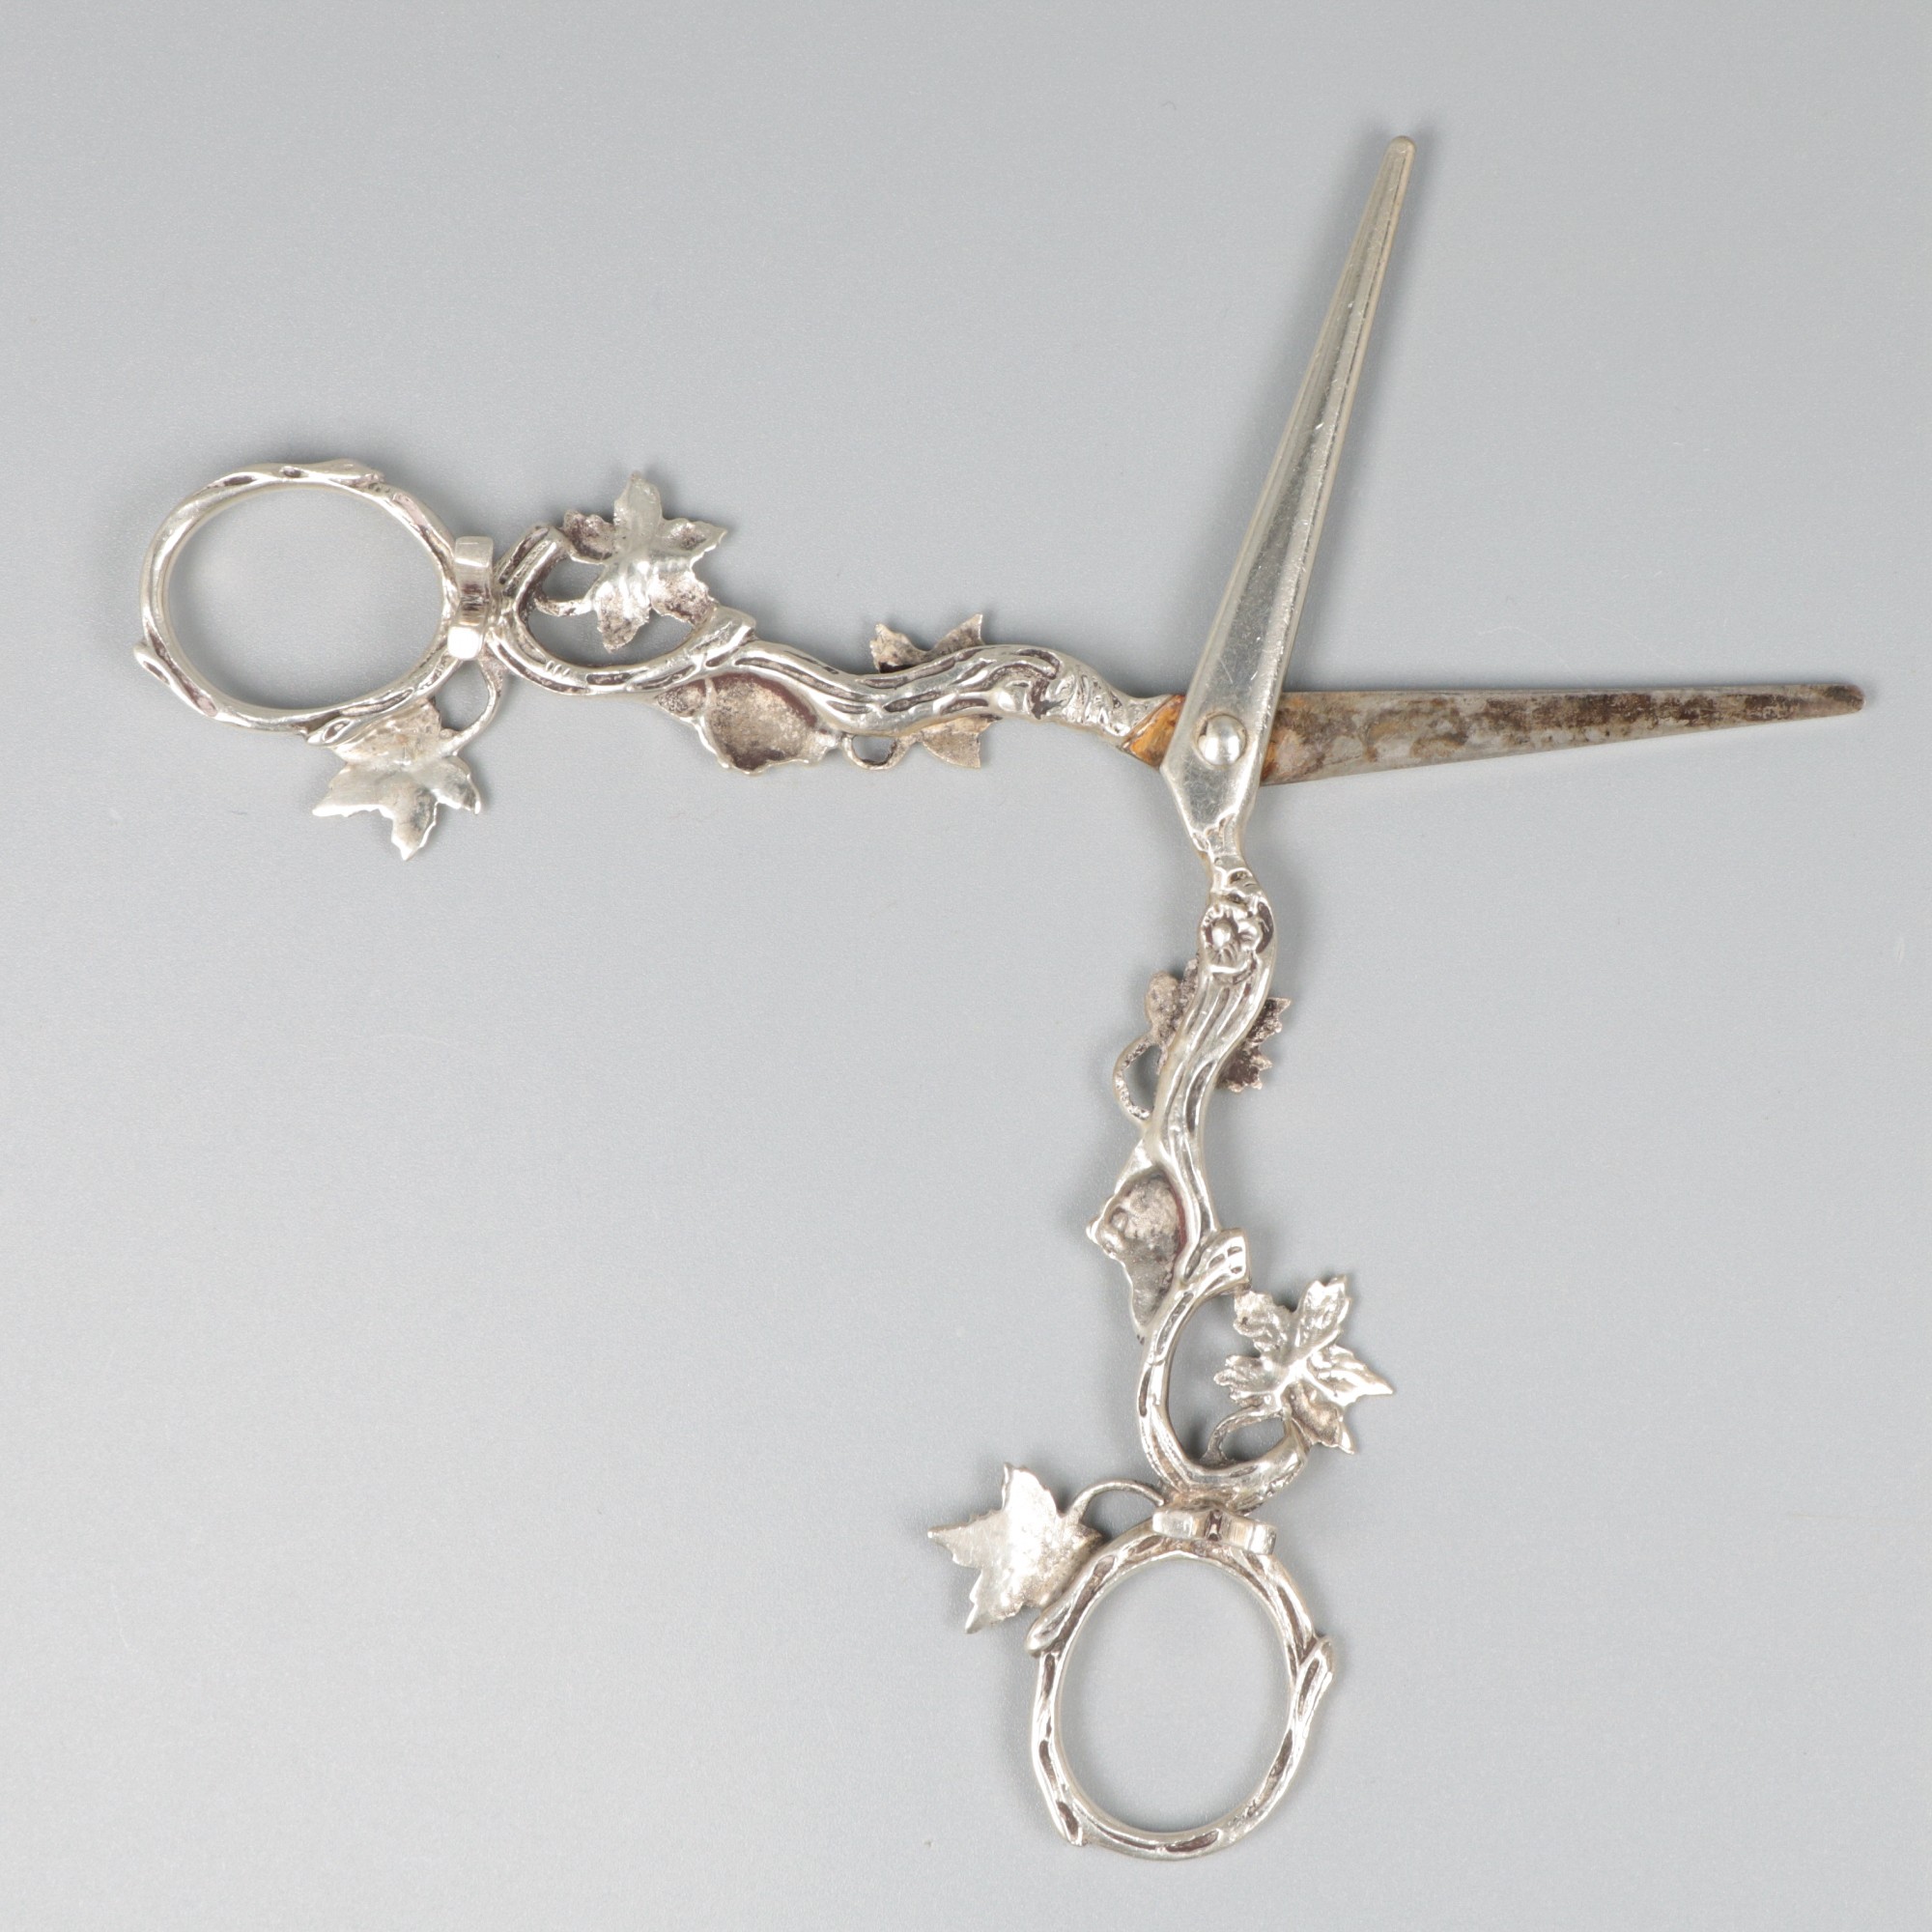 Grape scissors silver. - Image 4 of 8